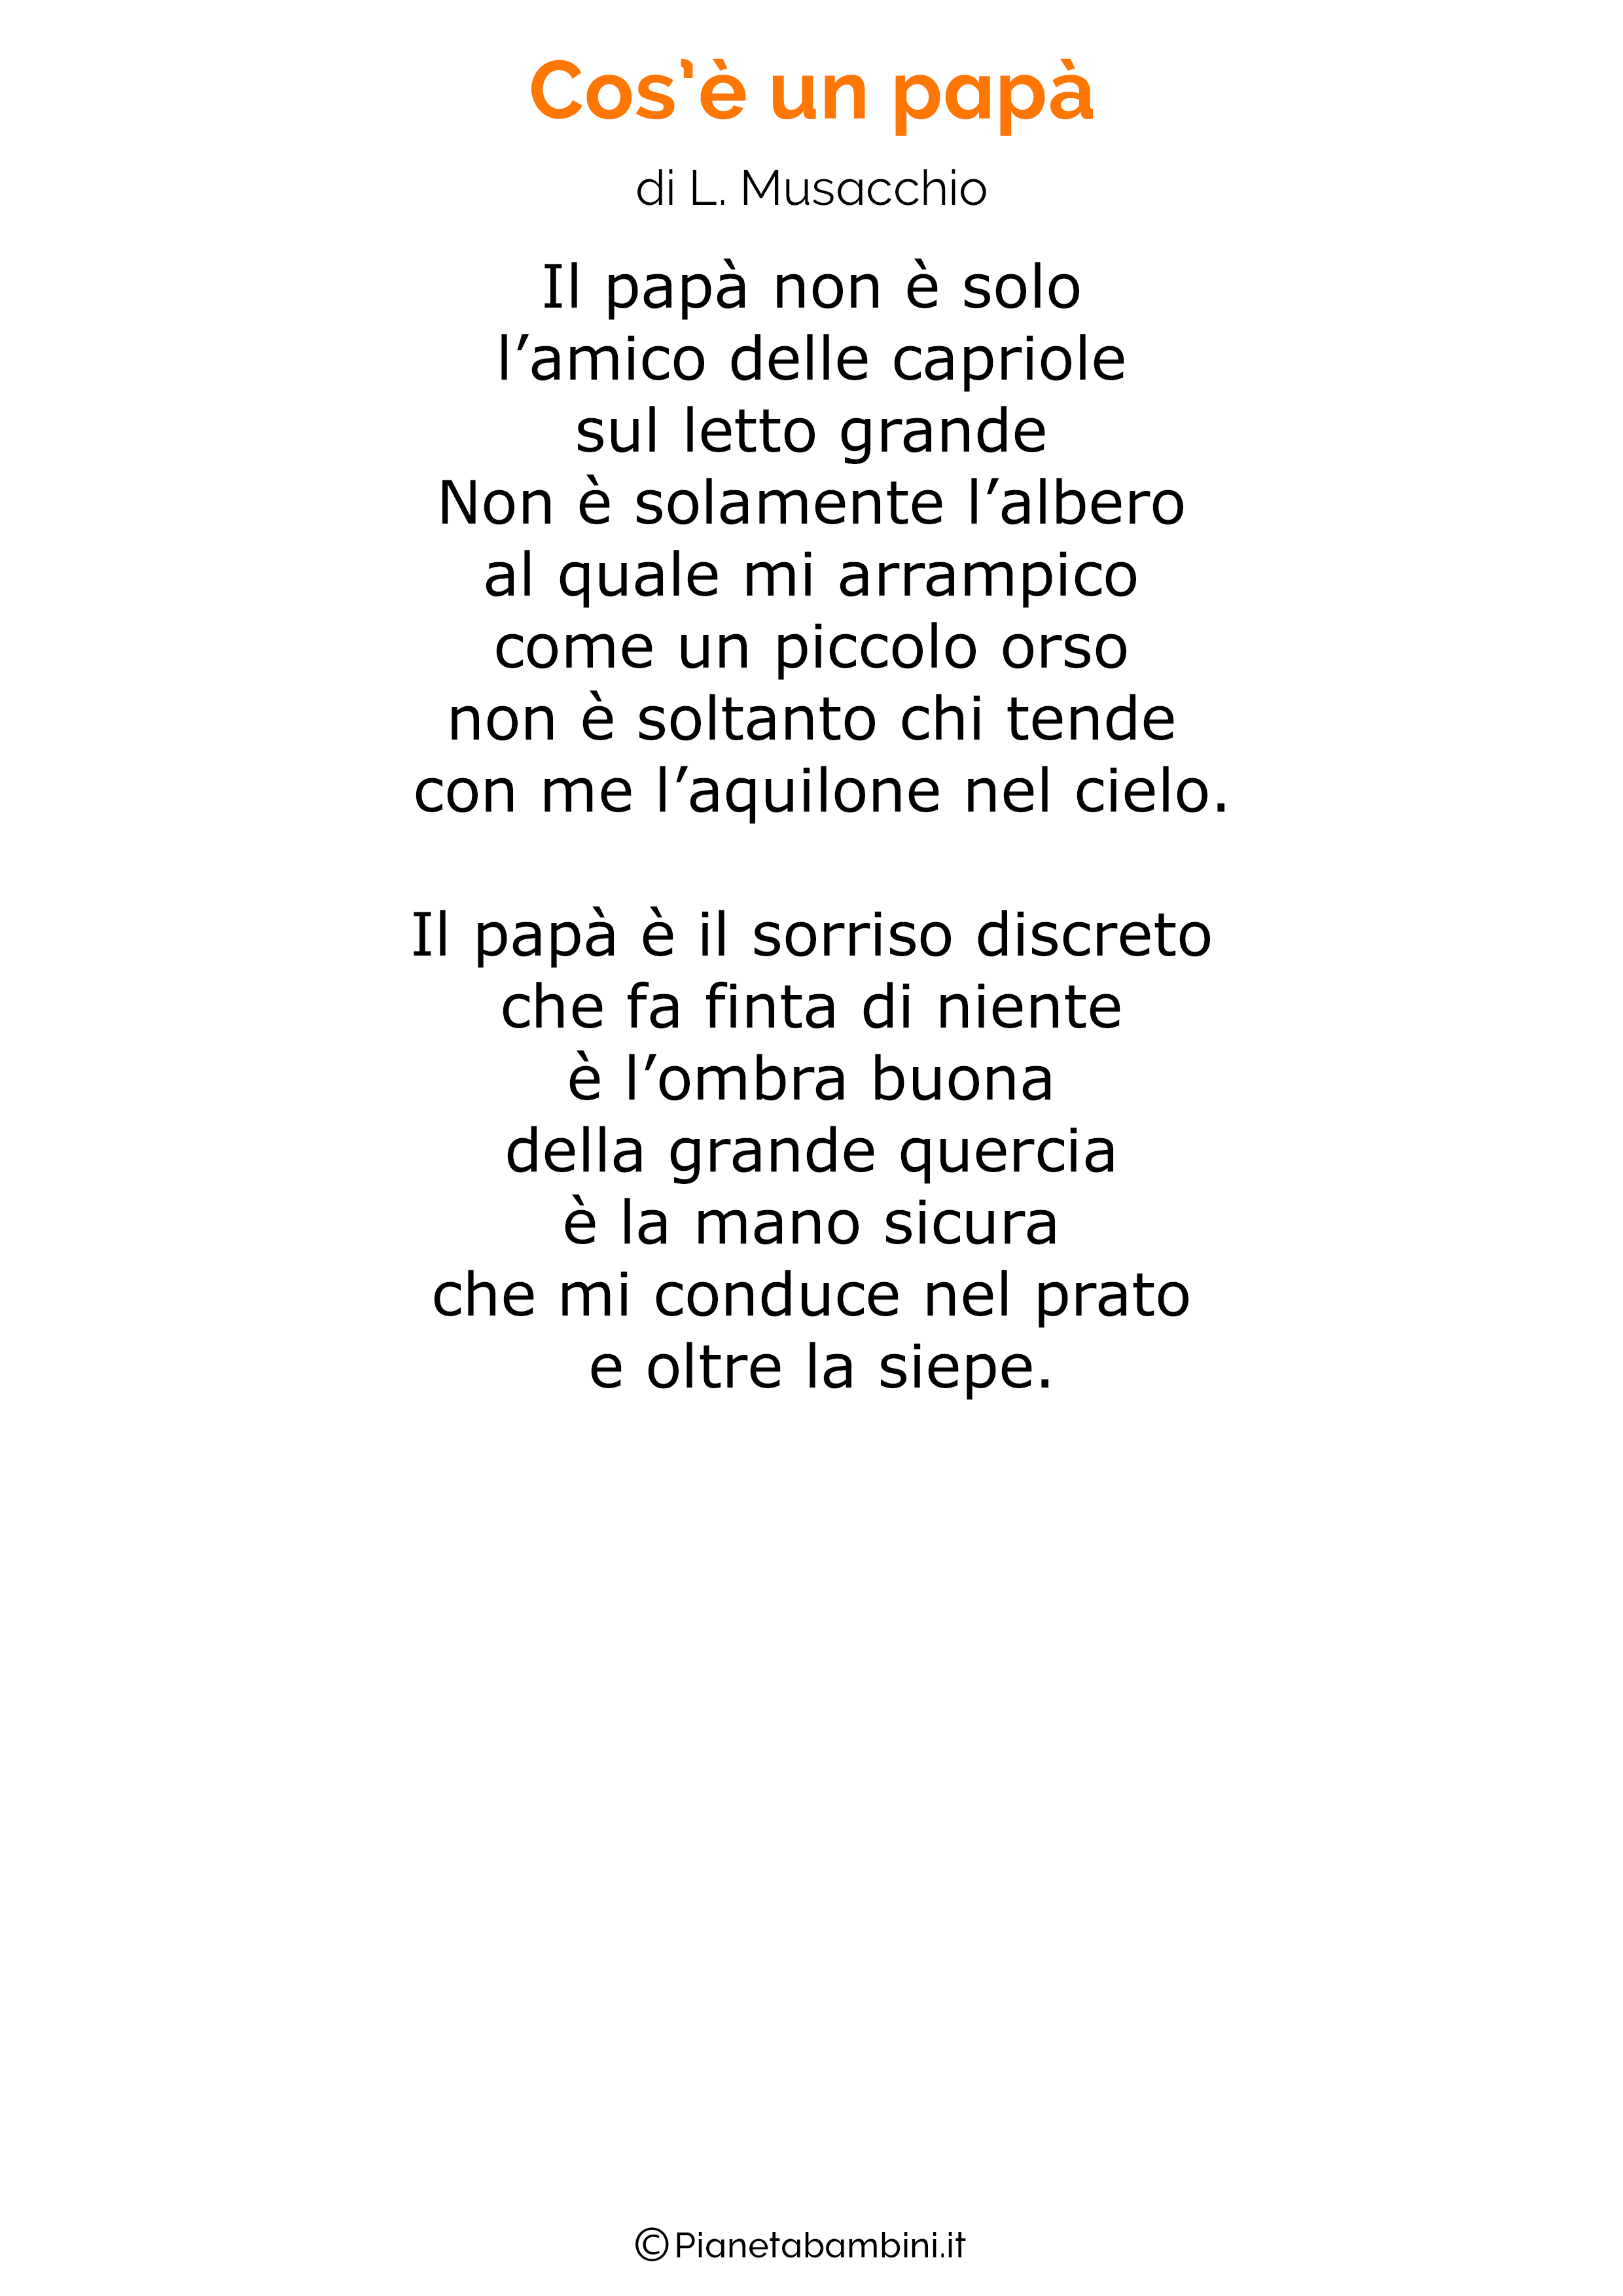 Poesia per la festa del papa per bambini 19